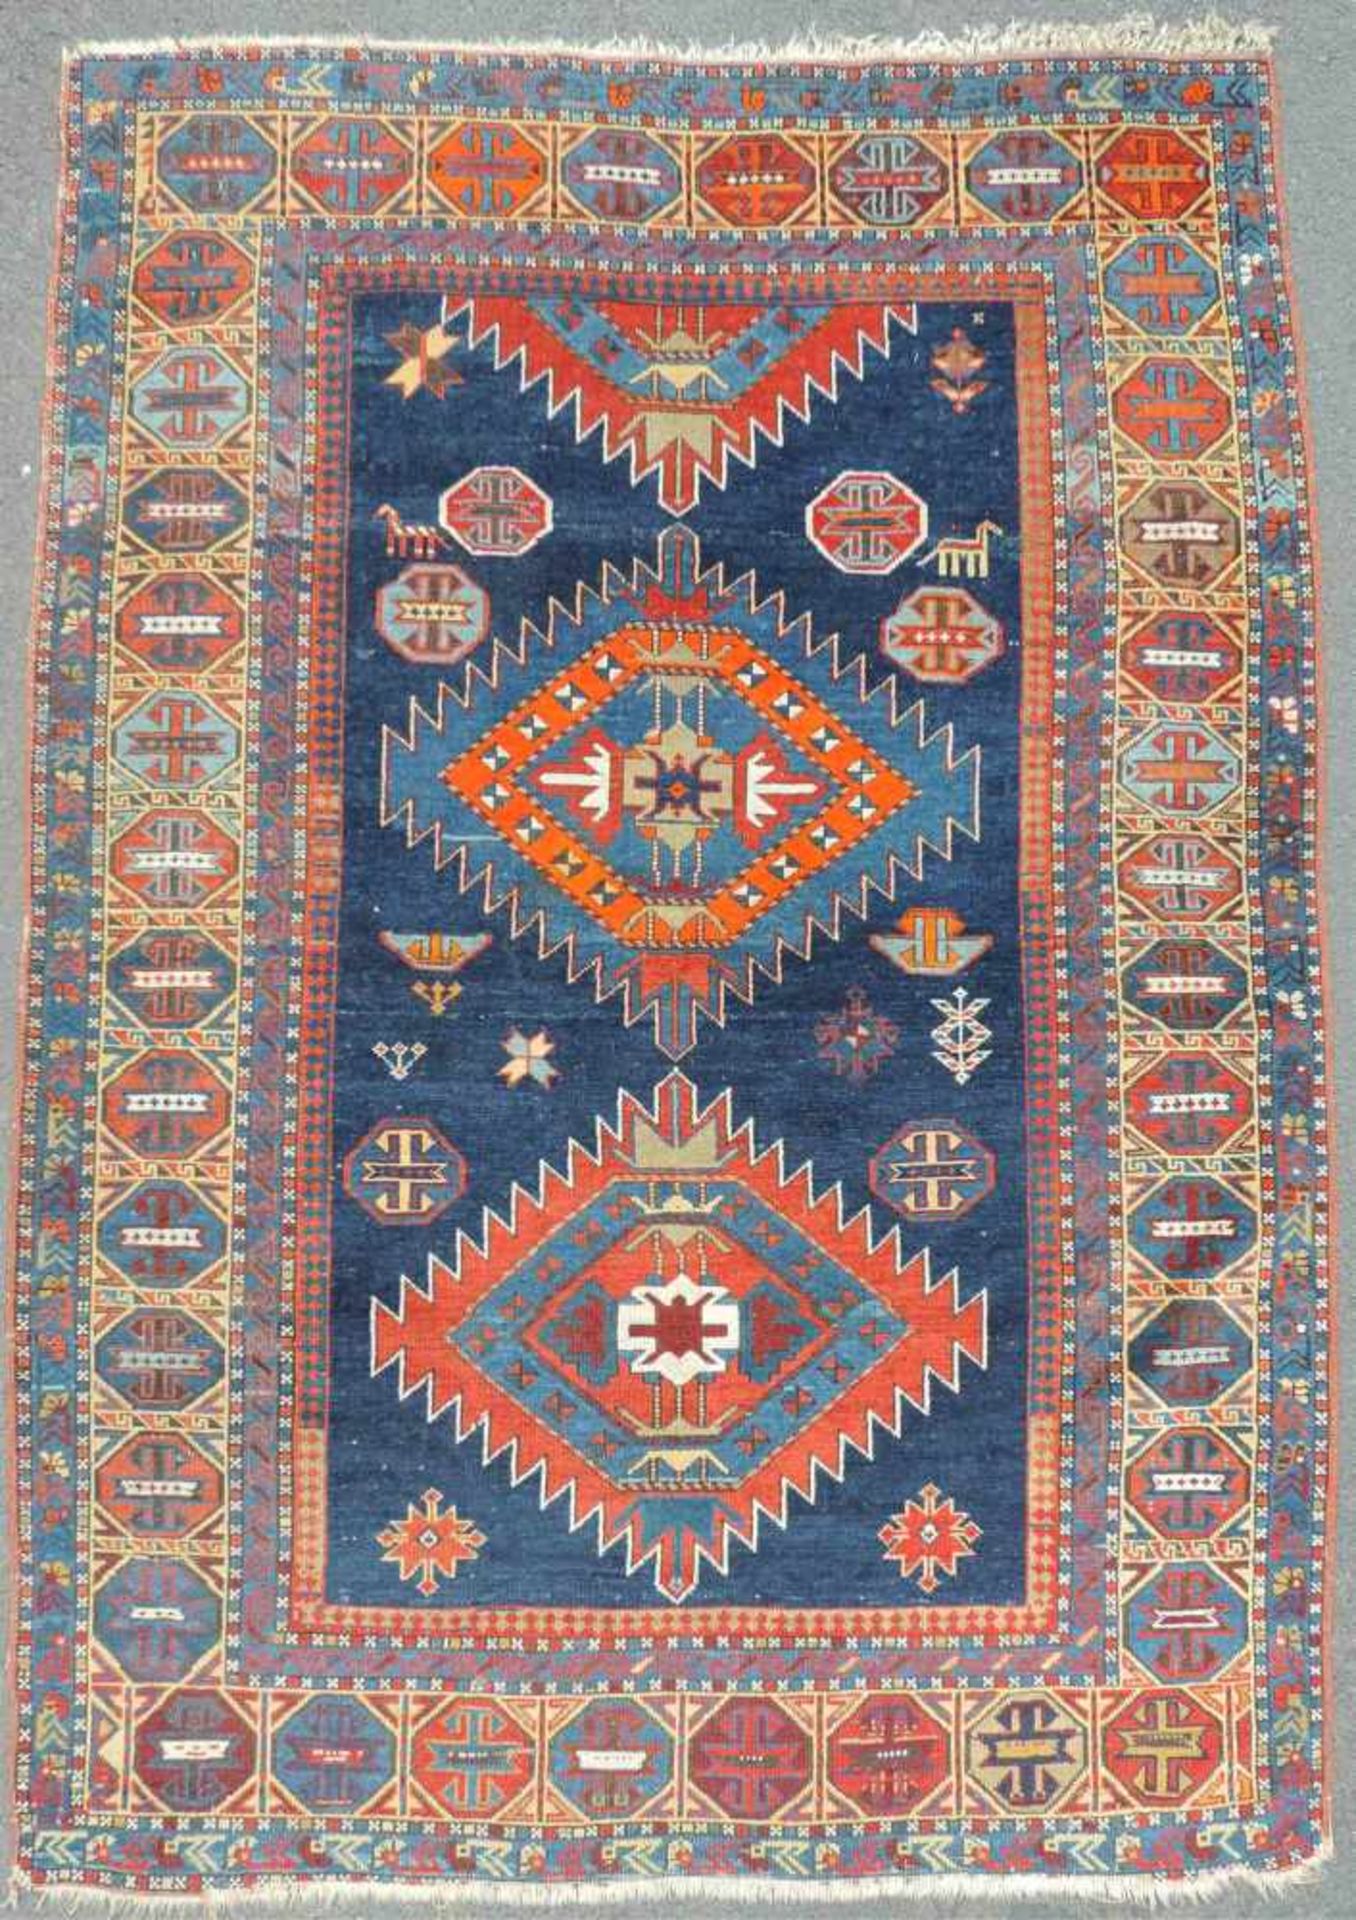 Schirwan Dorfteppich. Kaukasus, alt um 1910. Feine Knüpfung. 171 cm x 123 cm. Handgeknüpft. Wolle